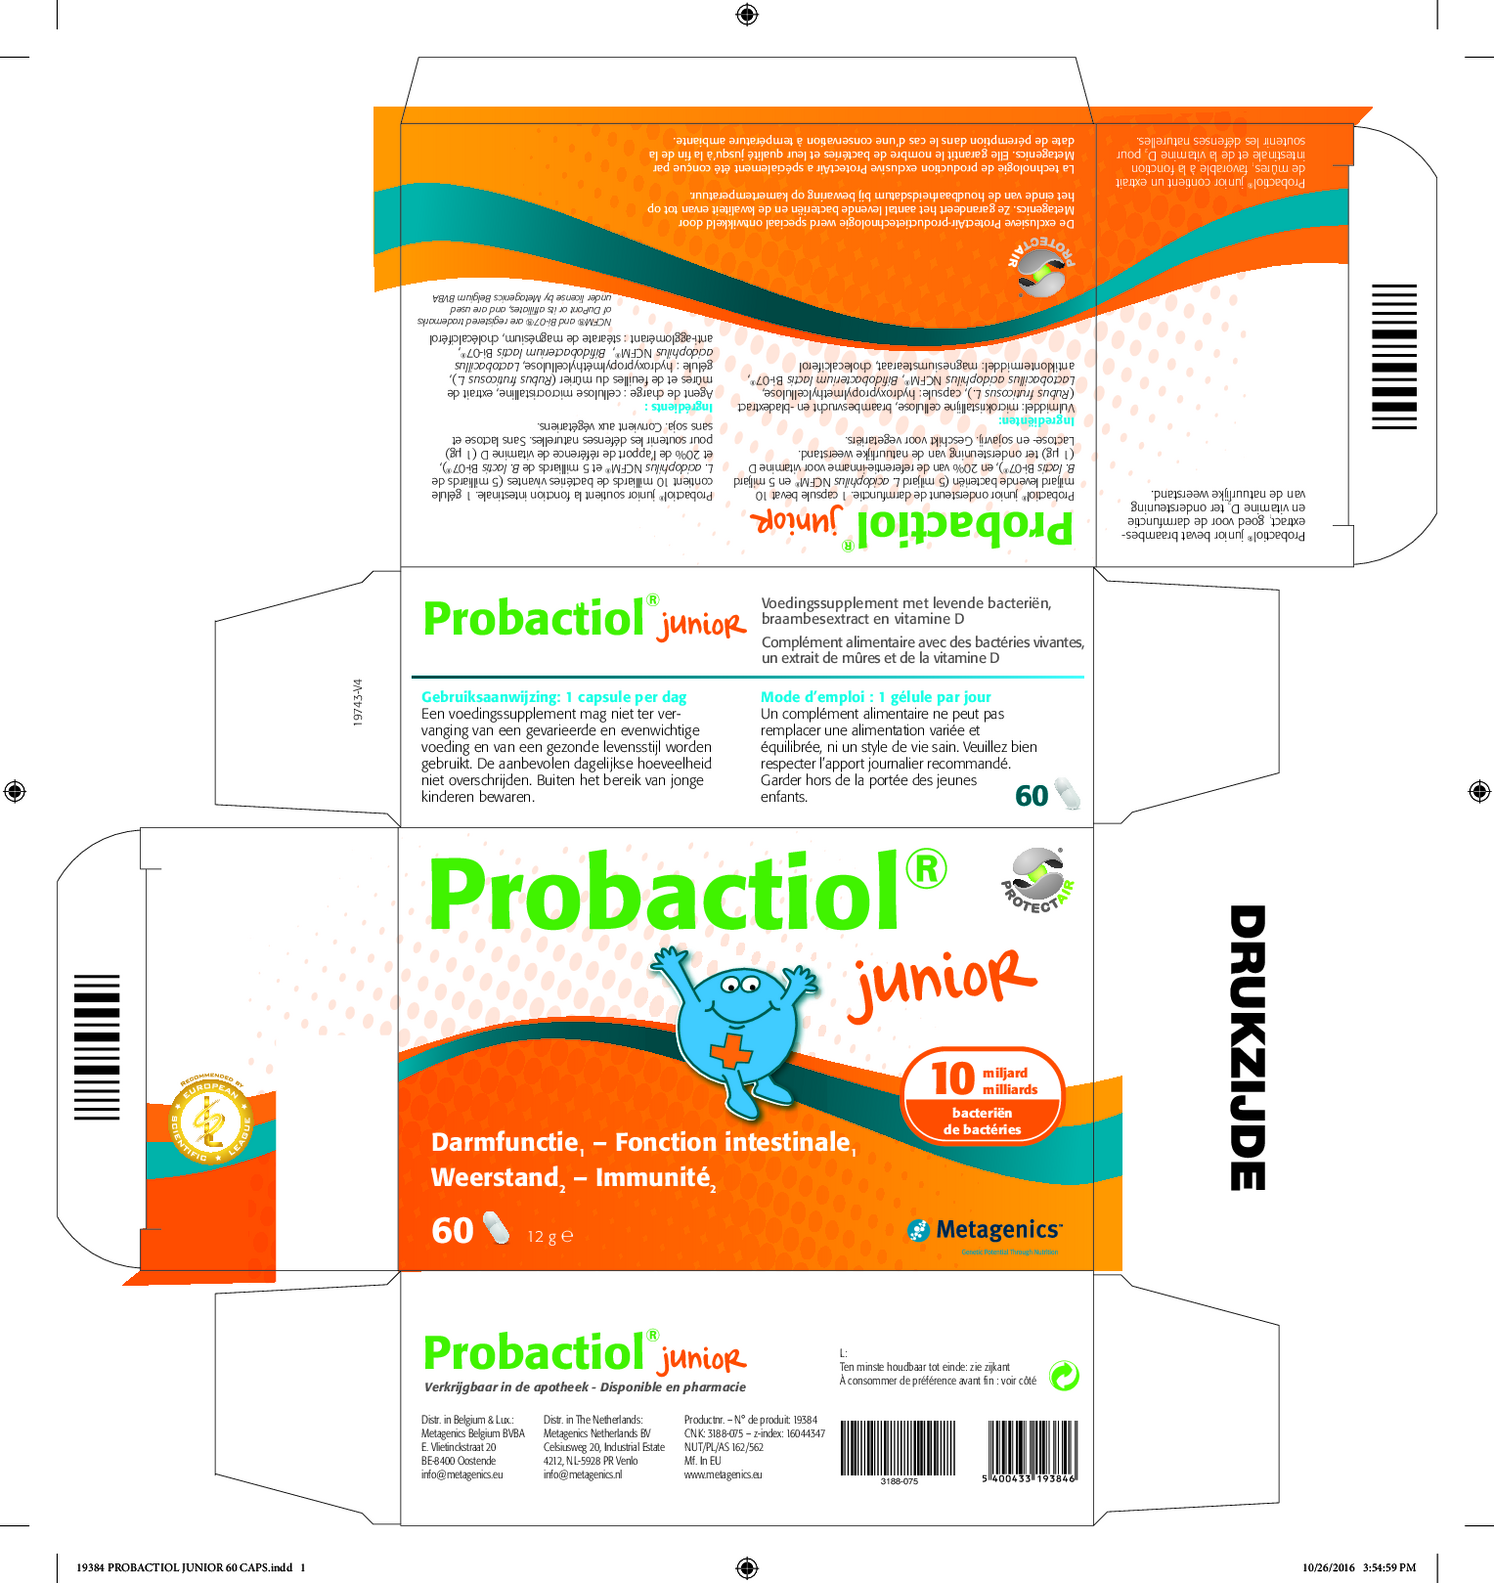 Probactiol Junior Capsules afbeelding van document #1, etiket